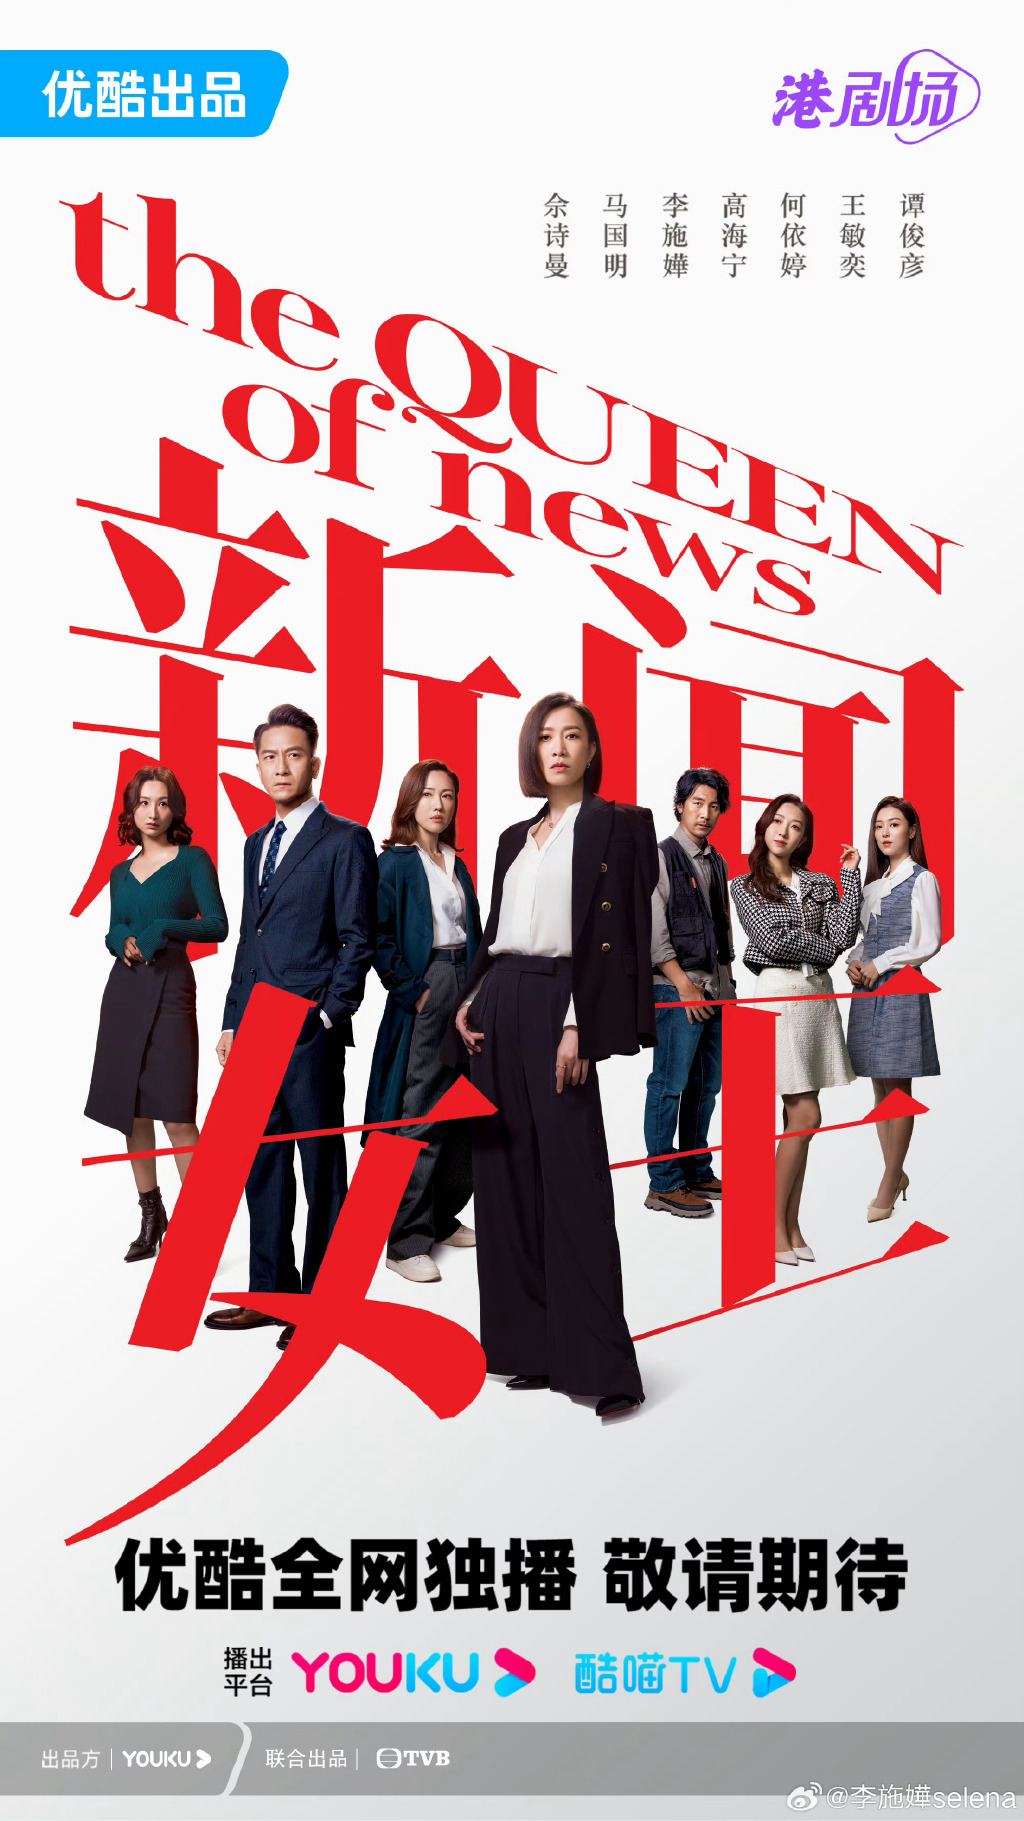 电视剧《新闻女王》将于11月20日开播